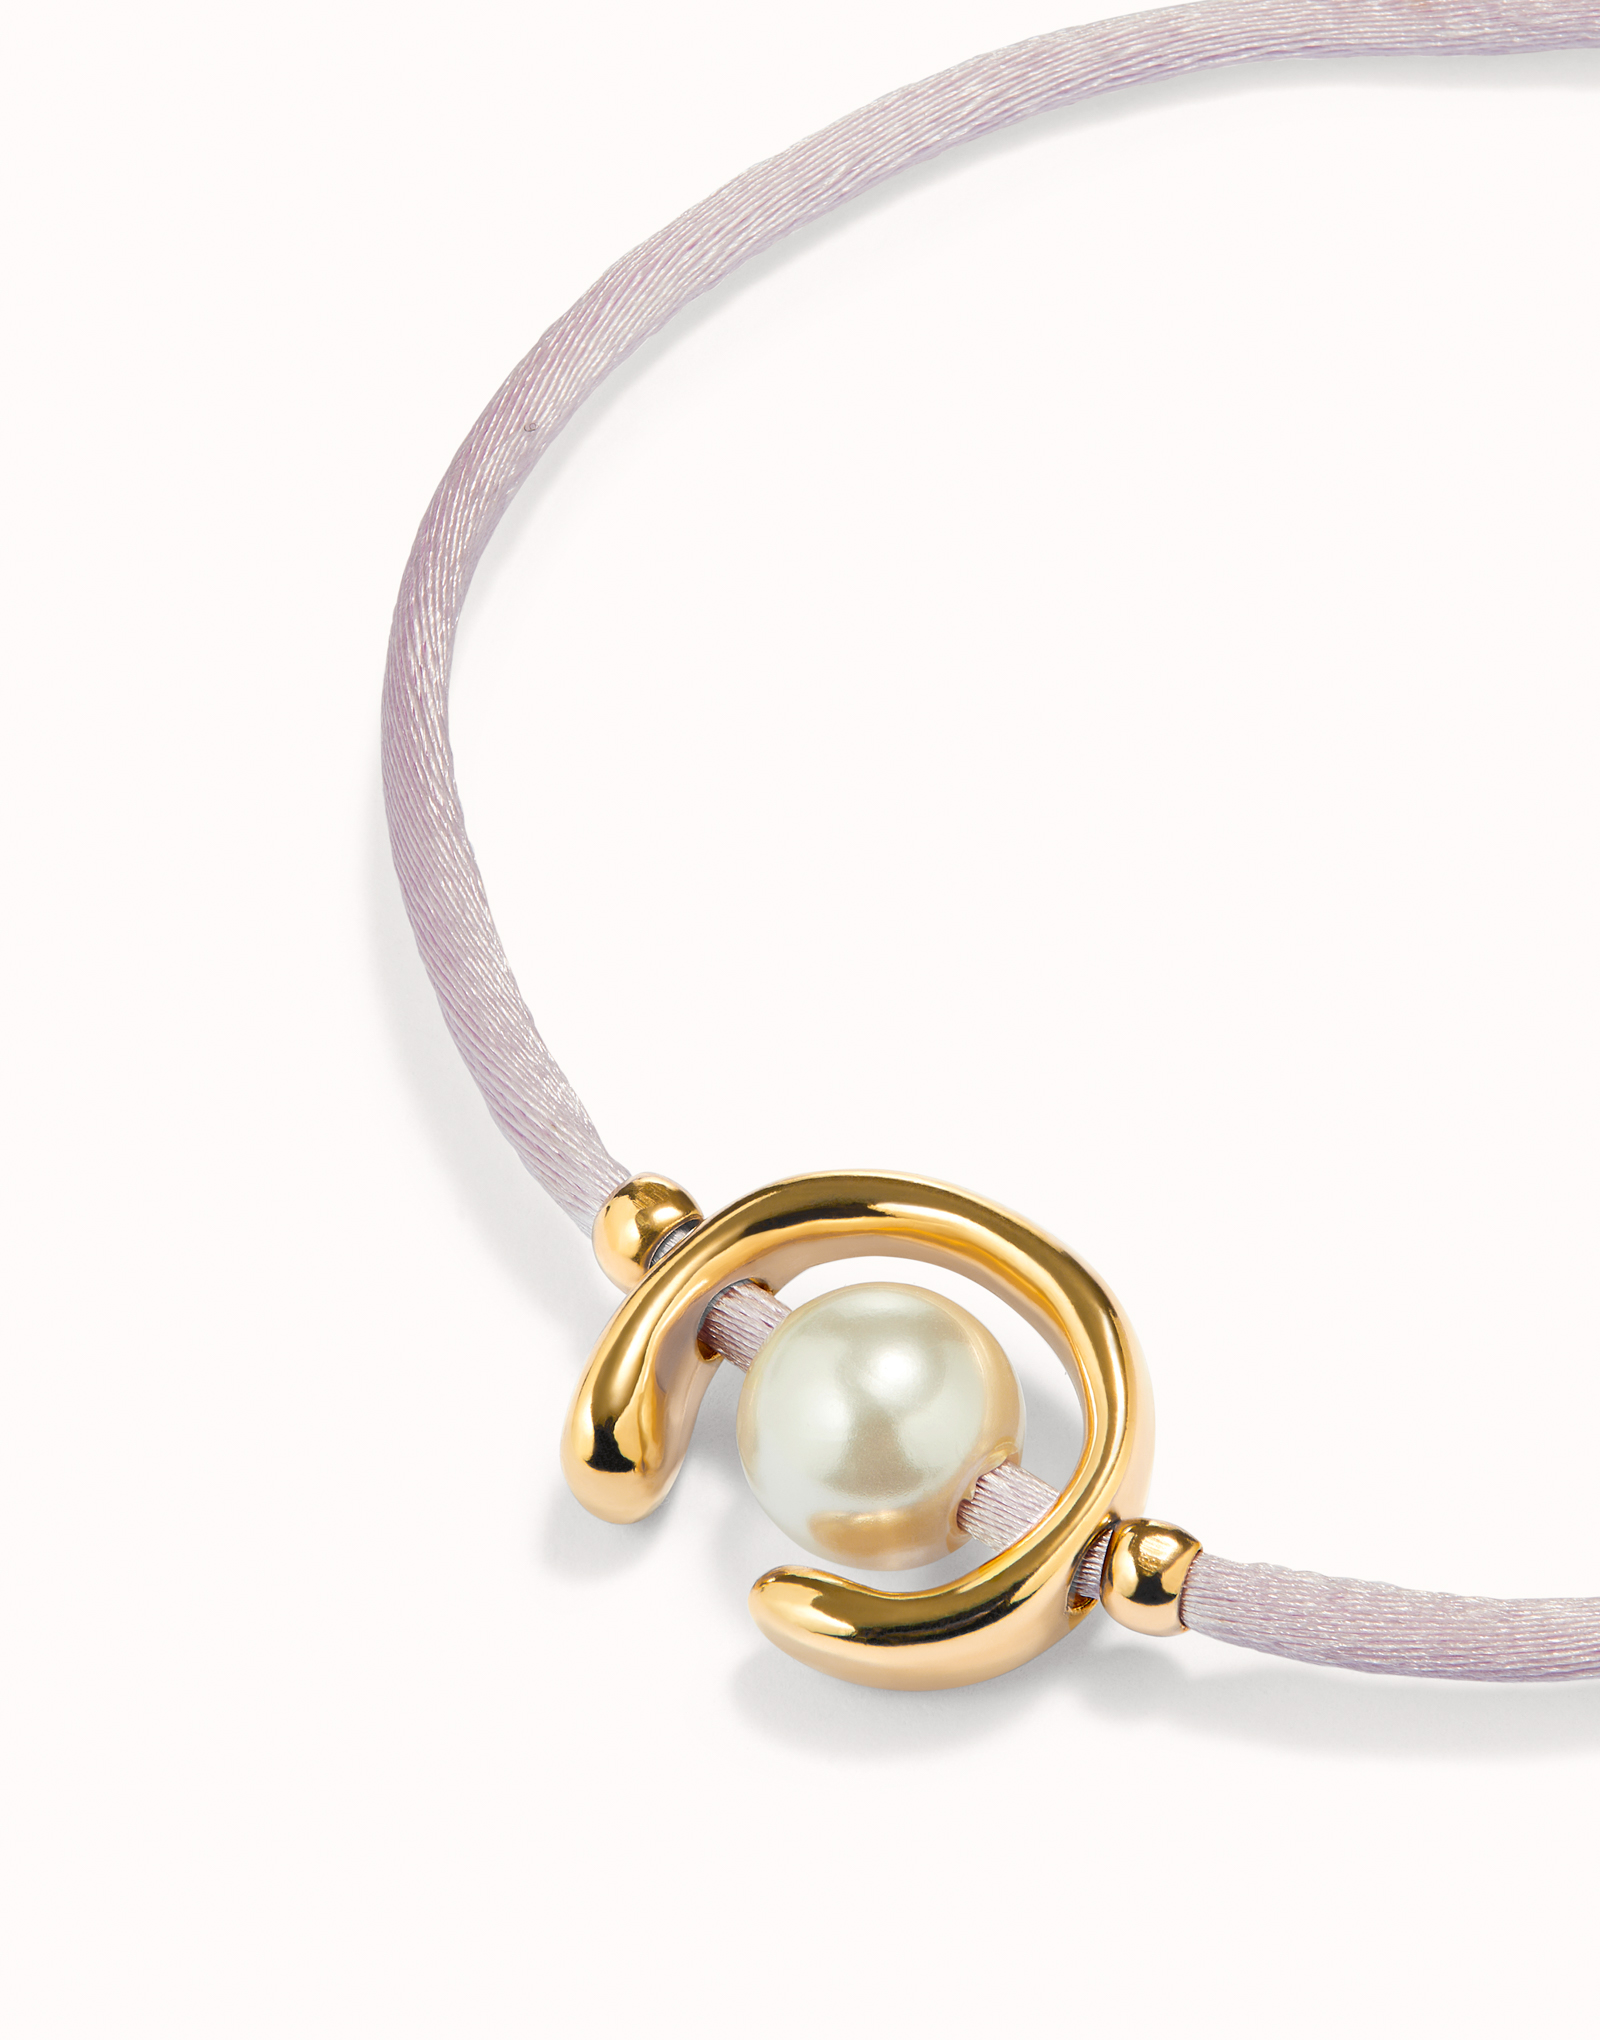 Bracelet en fil lilas avec perle de coquillage plaquée argent., Argent, large image number null